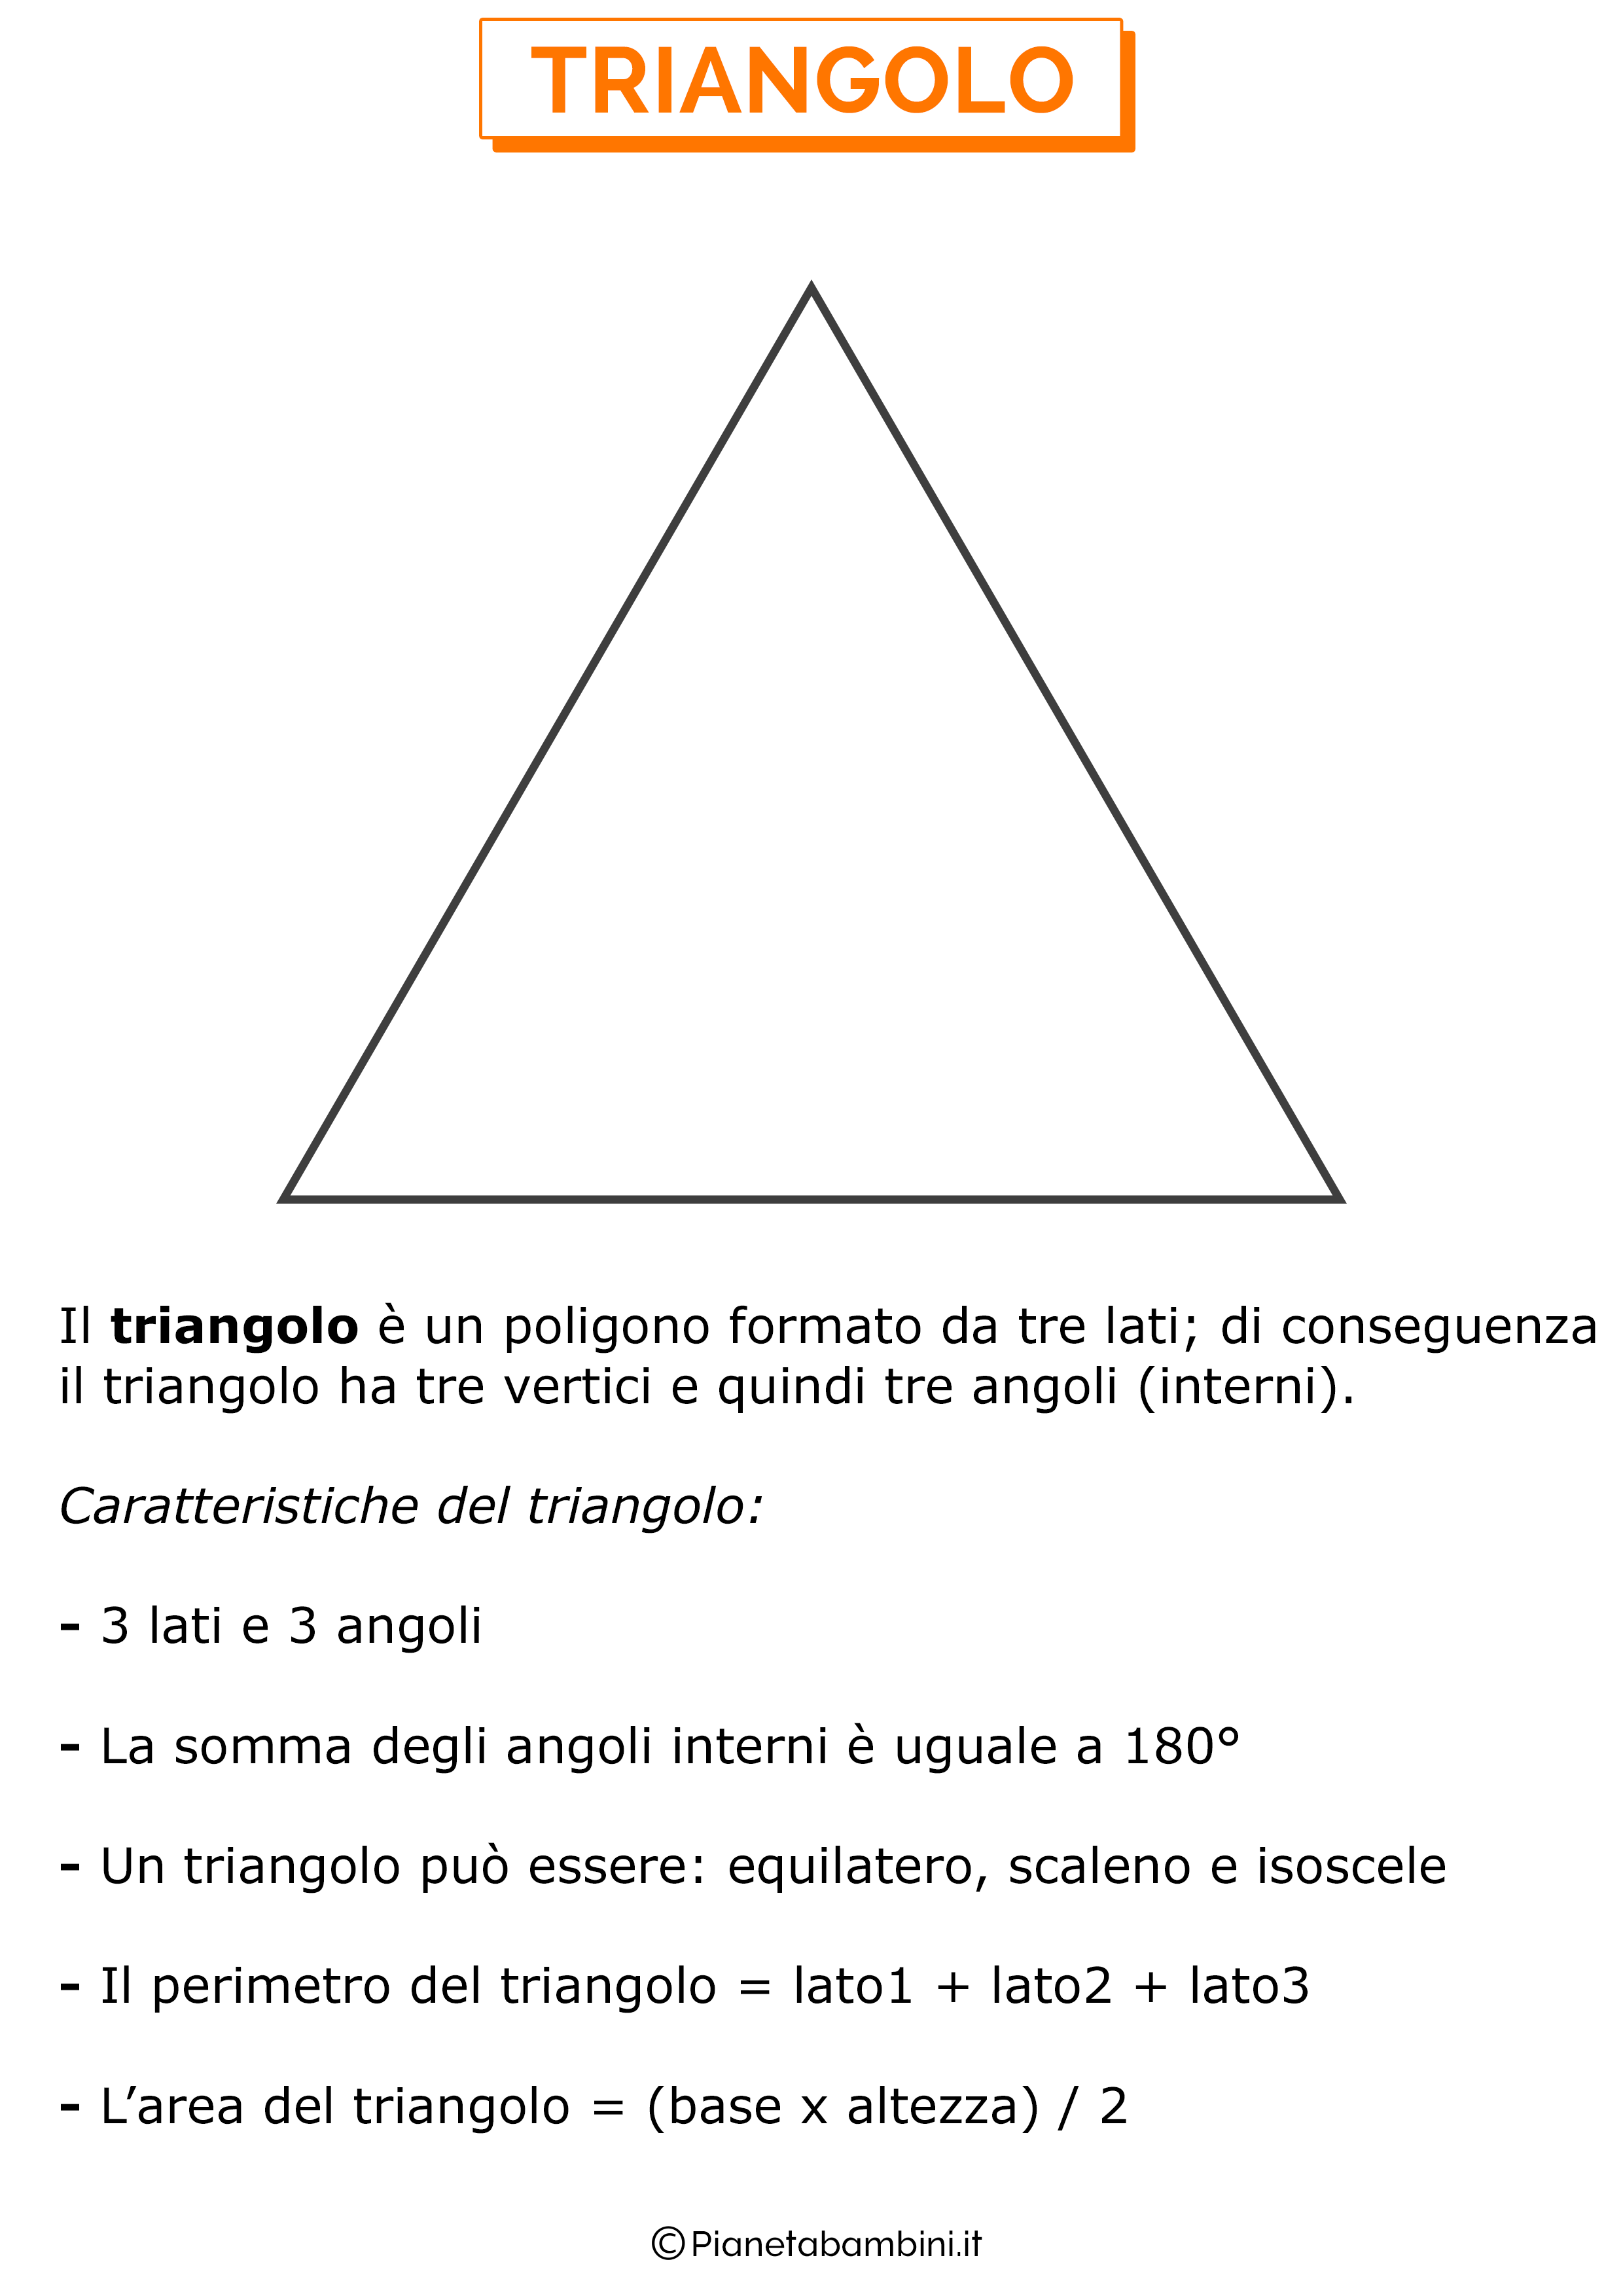 Caratteristiche del triangolo